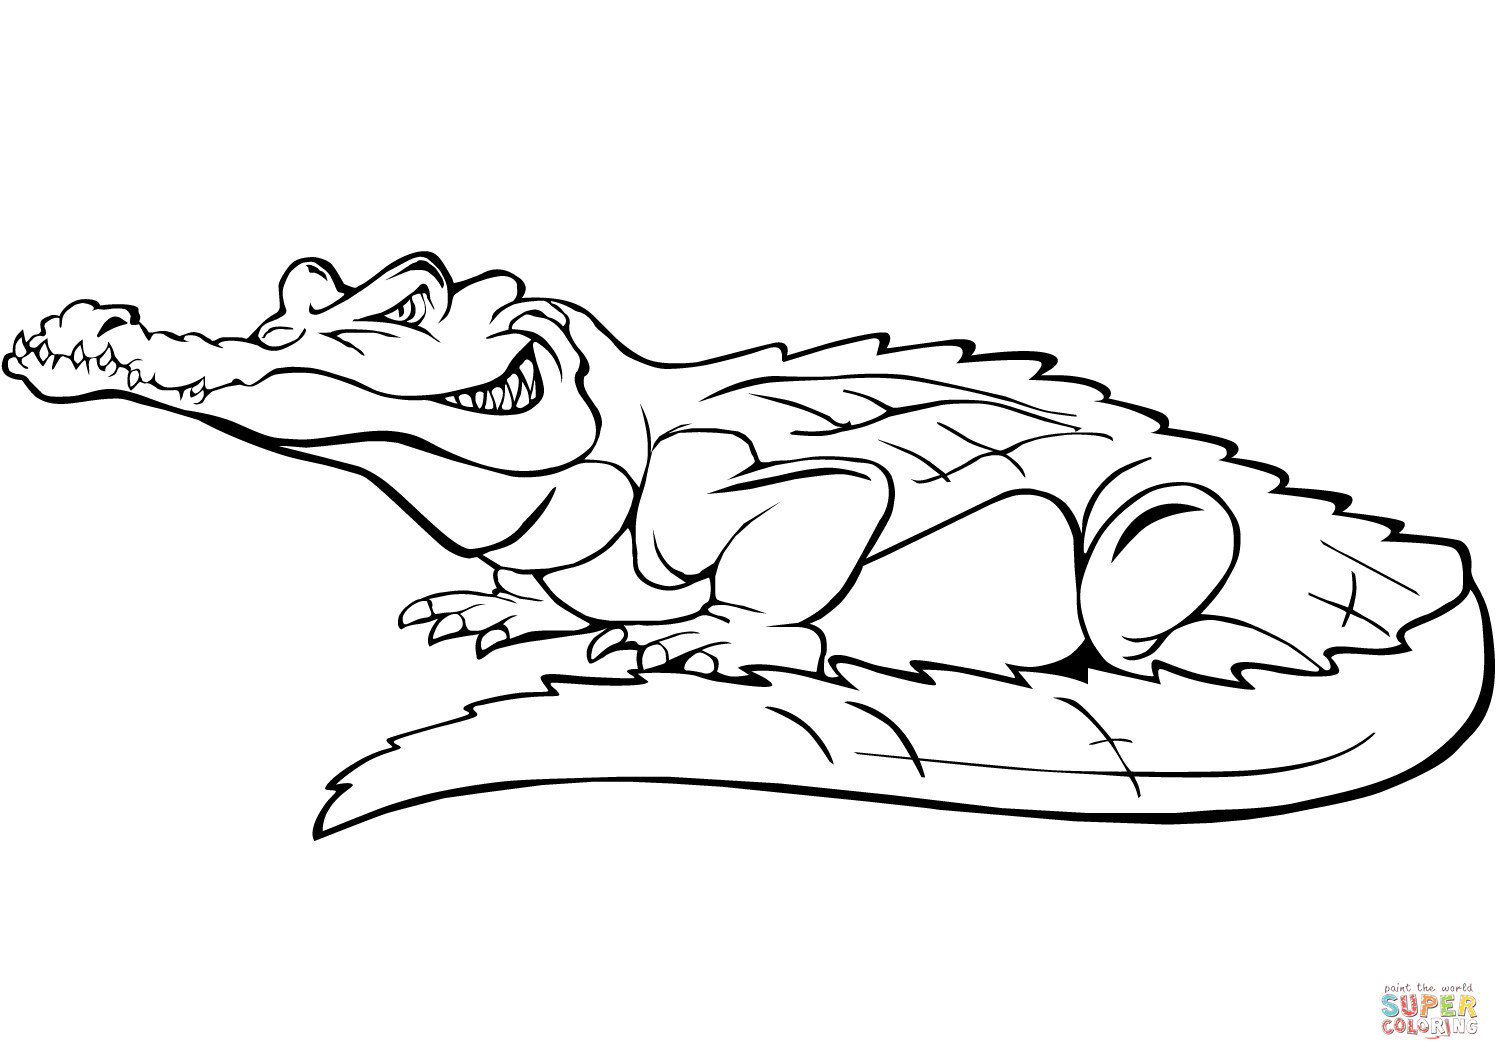 Ausmalbild: Comic-Krokodil | Ausmalbilder Kostenlos Zum bestimmt für Krokodil Bilder Zum Ausmalen